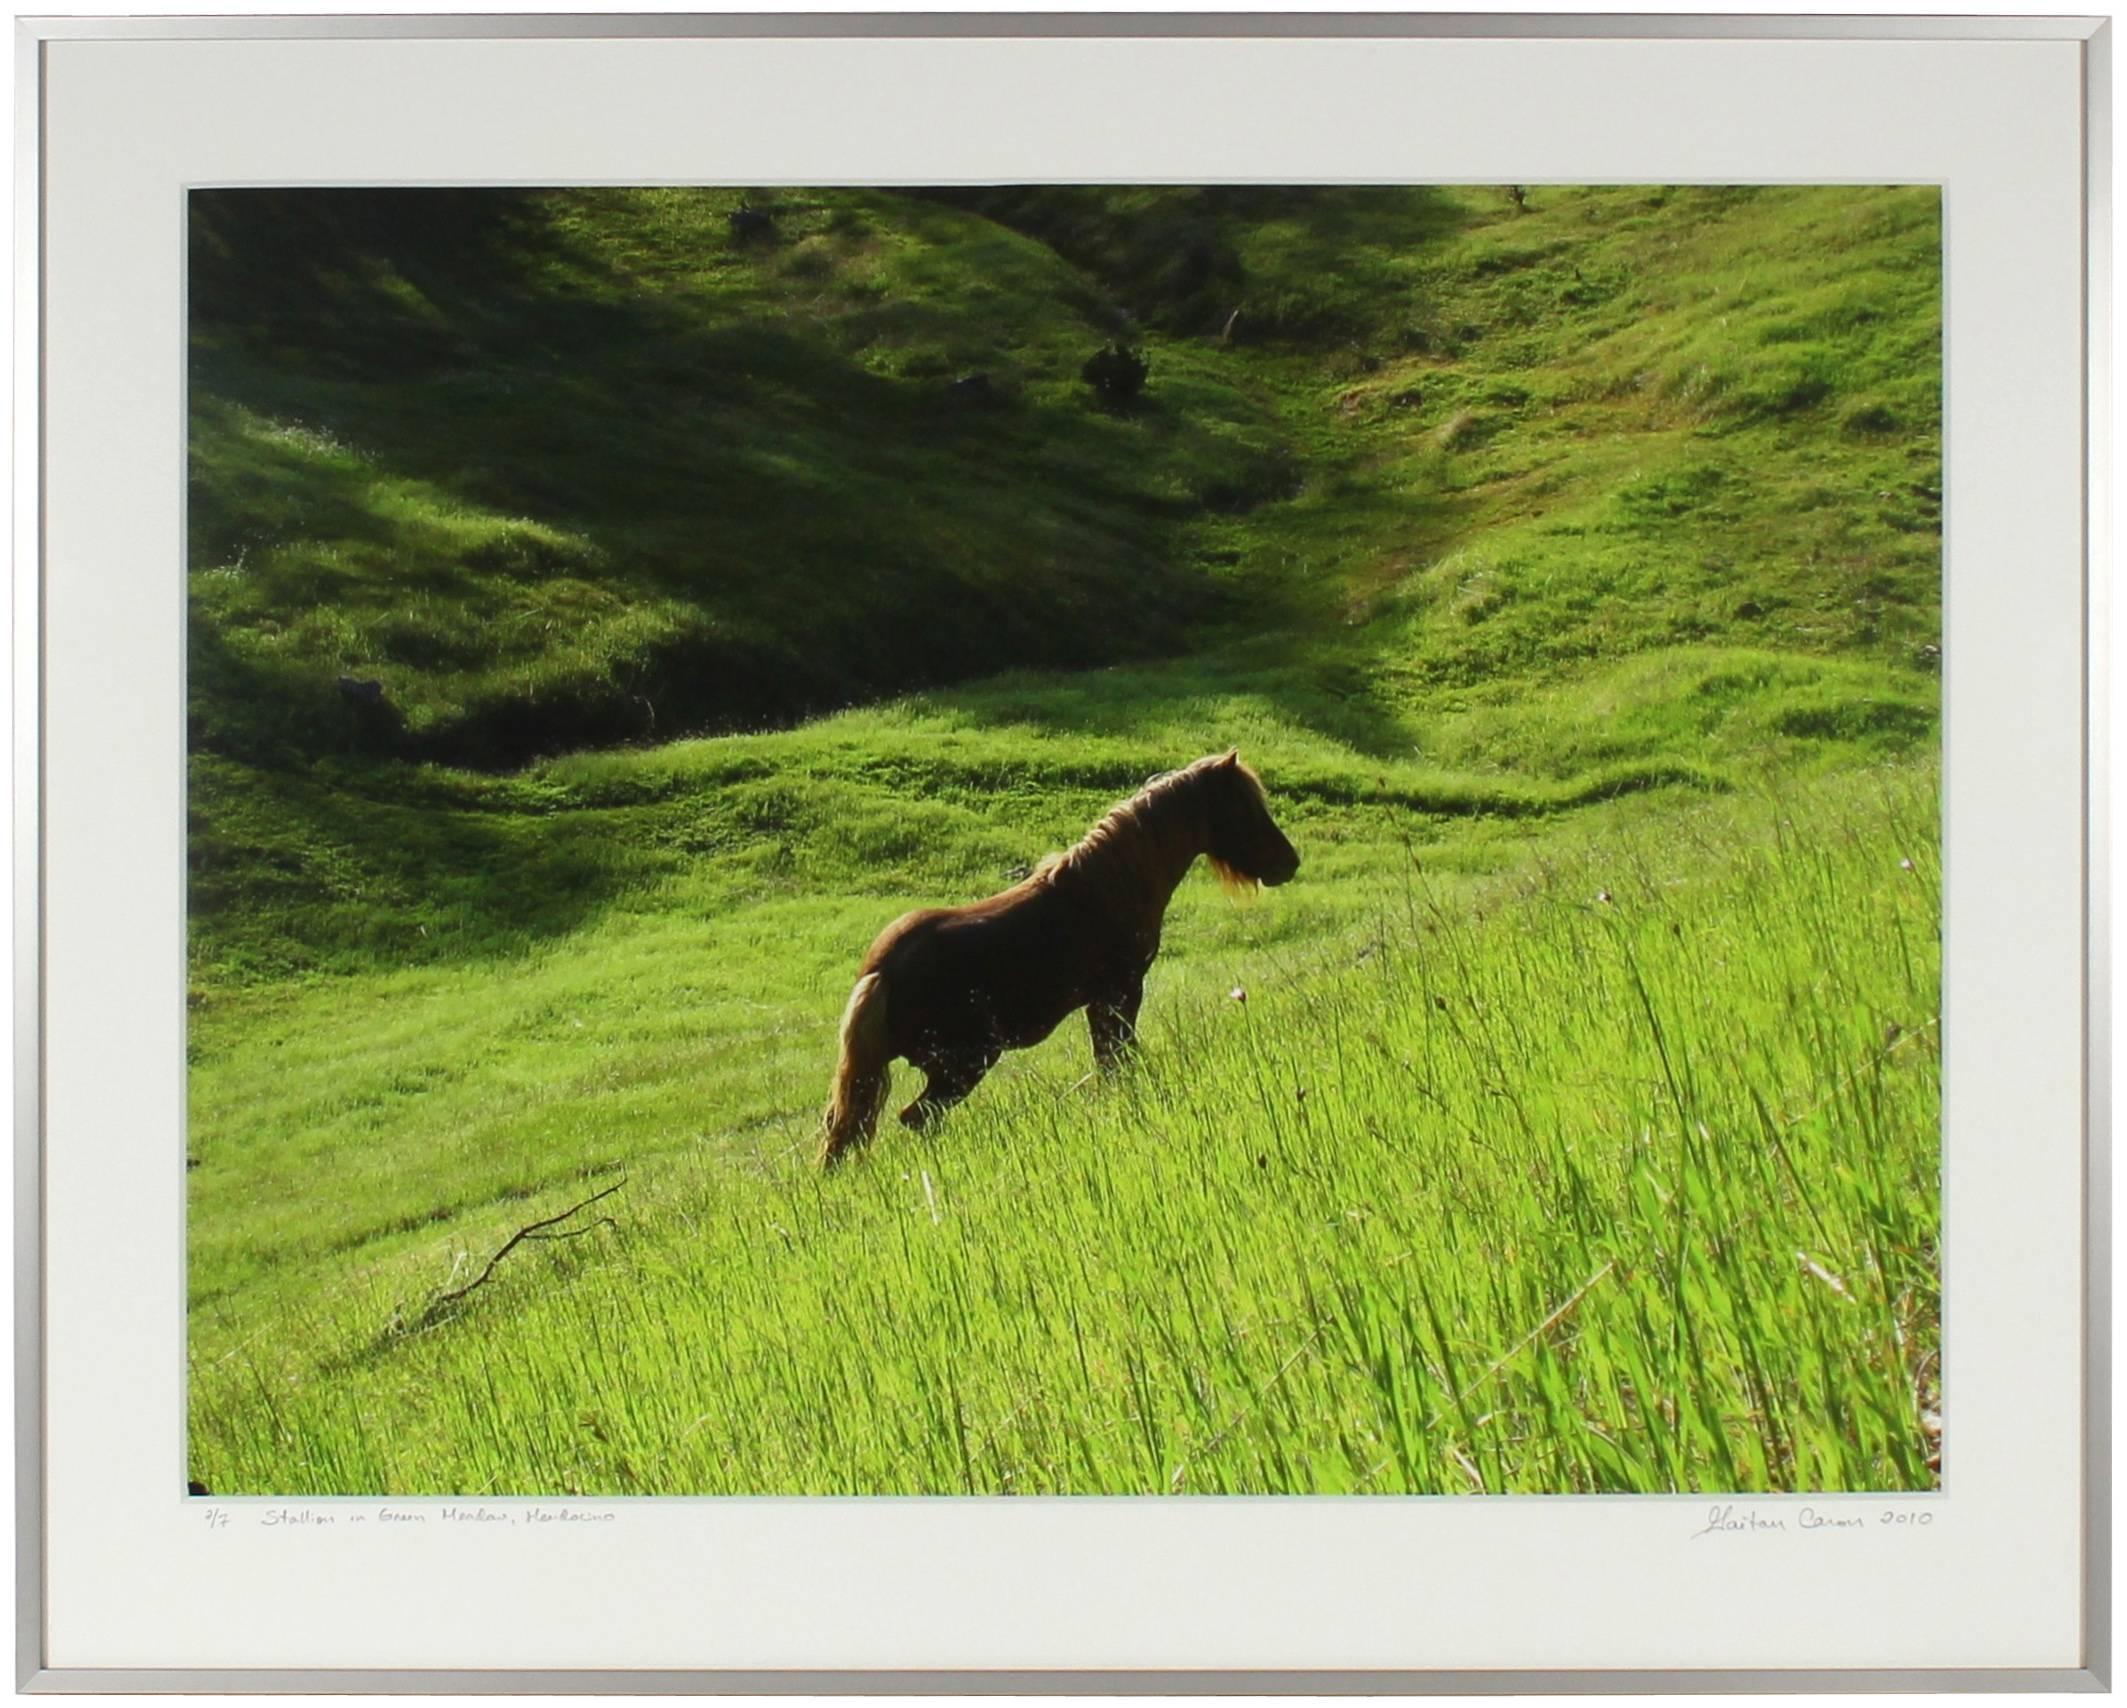 Gaétan Caron Color Photograph - “Stallion in Green Meadow” Mendocino, California Landscape with Wild Pony